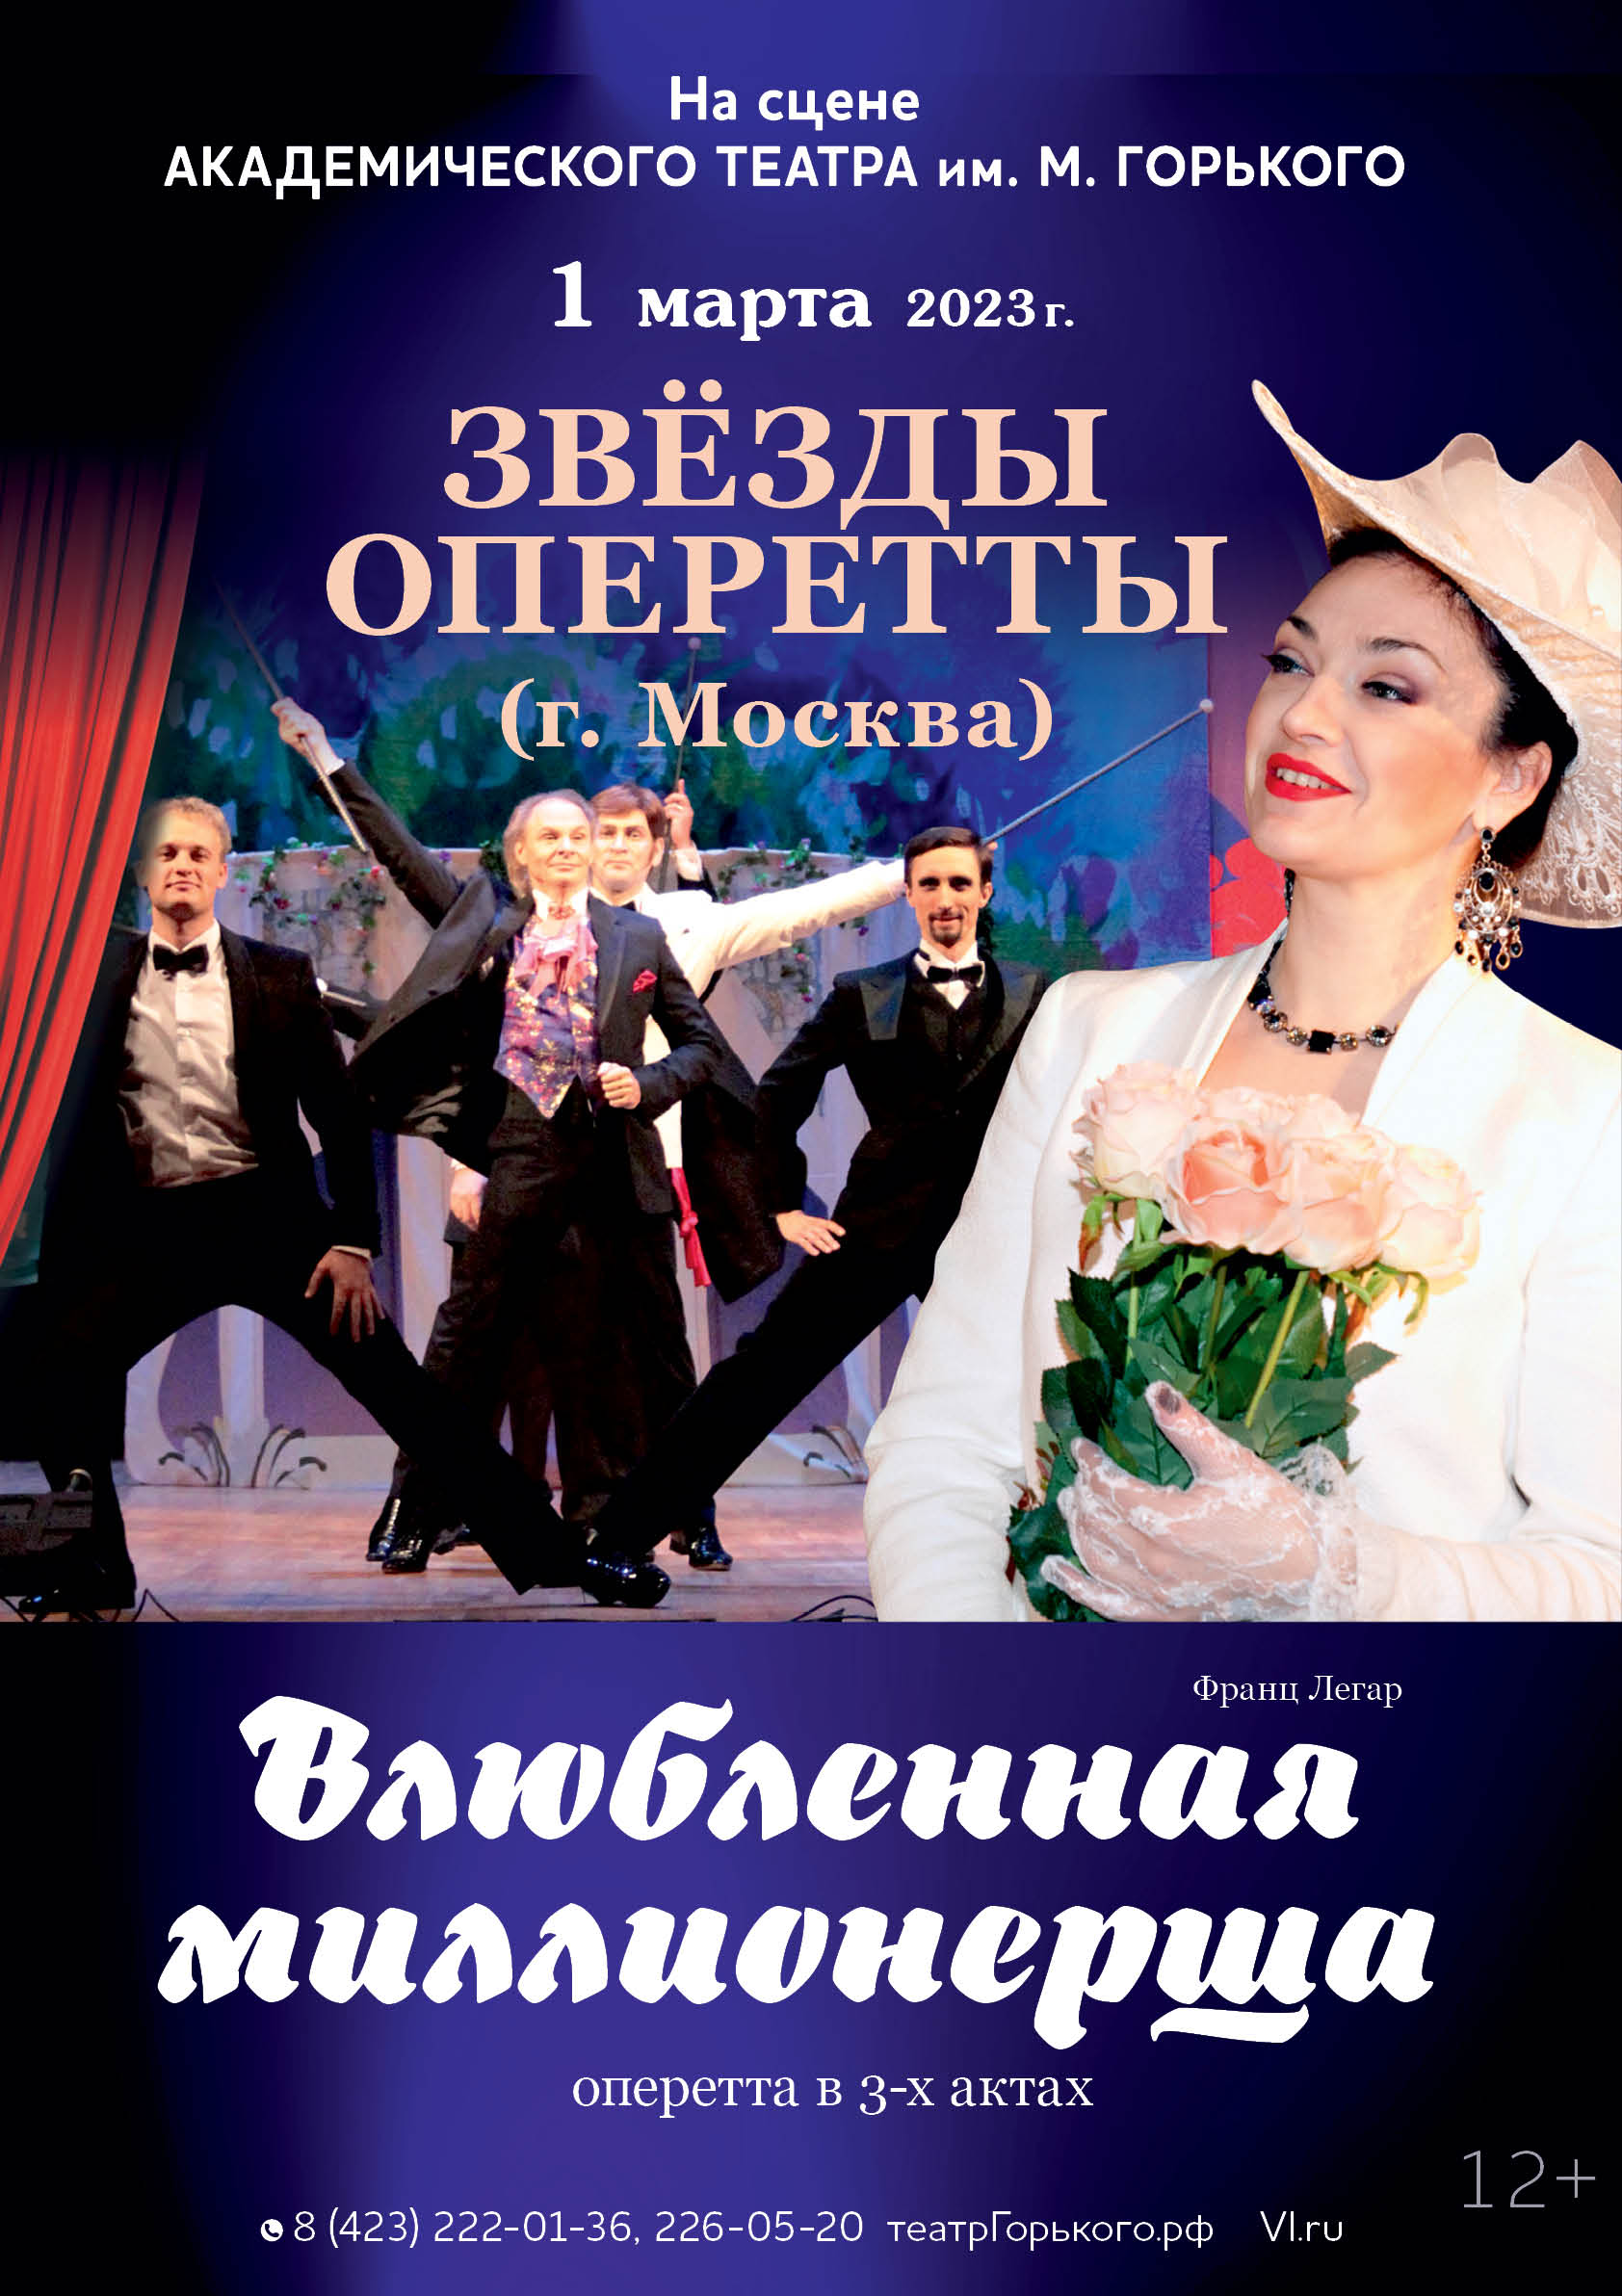 1 марта 2023 оперетта в 3-х актах «ВЛЮБЛЁННАЯ МИЛЛИОНЕРША» (12+)